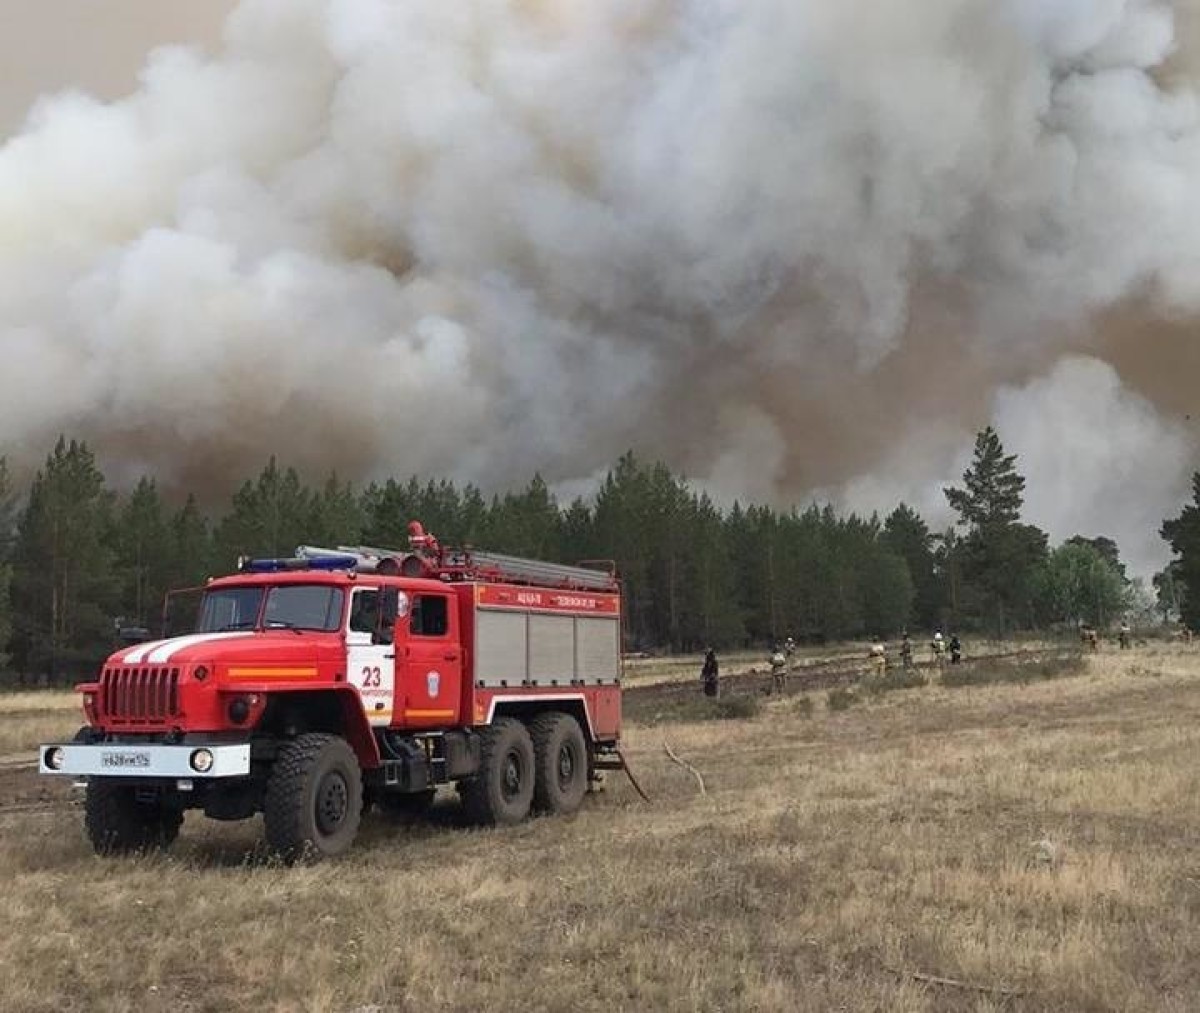 Режим чрезвычайной ситуации введен в двух районах Челябинской области из-за лесных пожаров